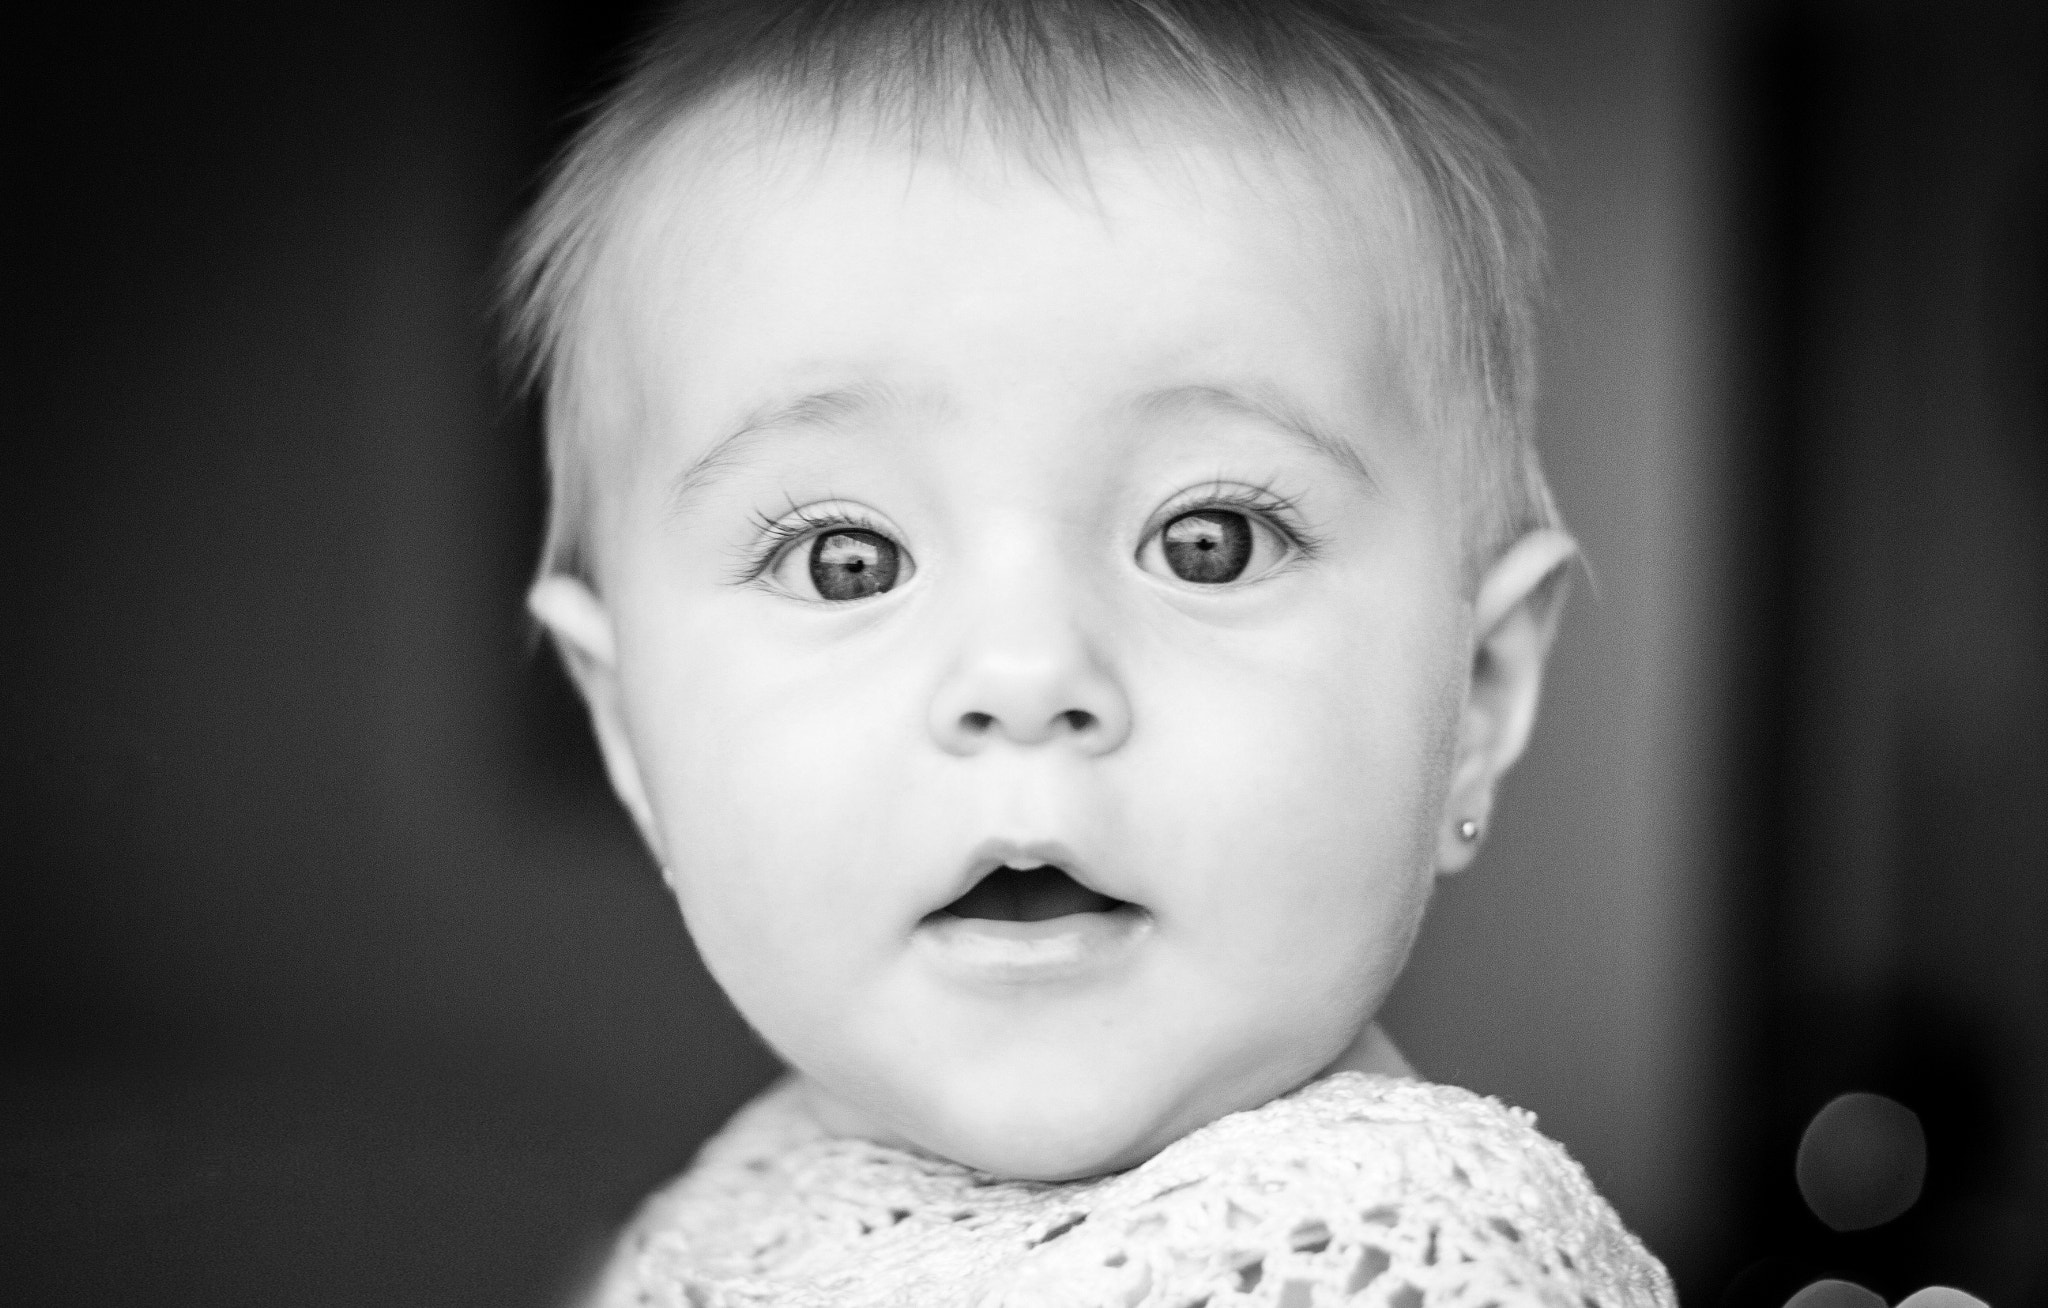 Canon EOS 100D (EOS Rebel SL1 / EOS Kiss X7) sample photo. Baby photography